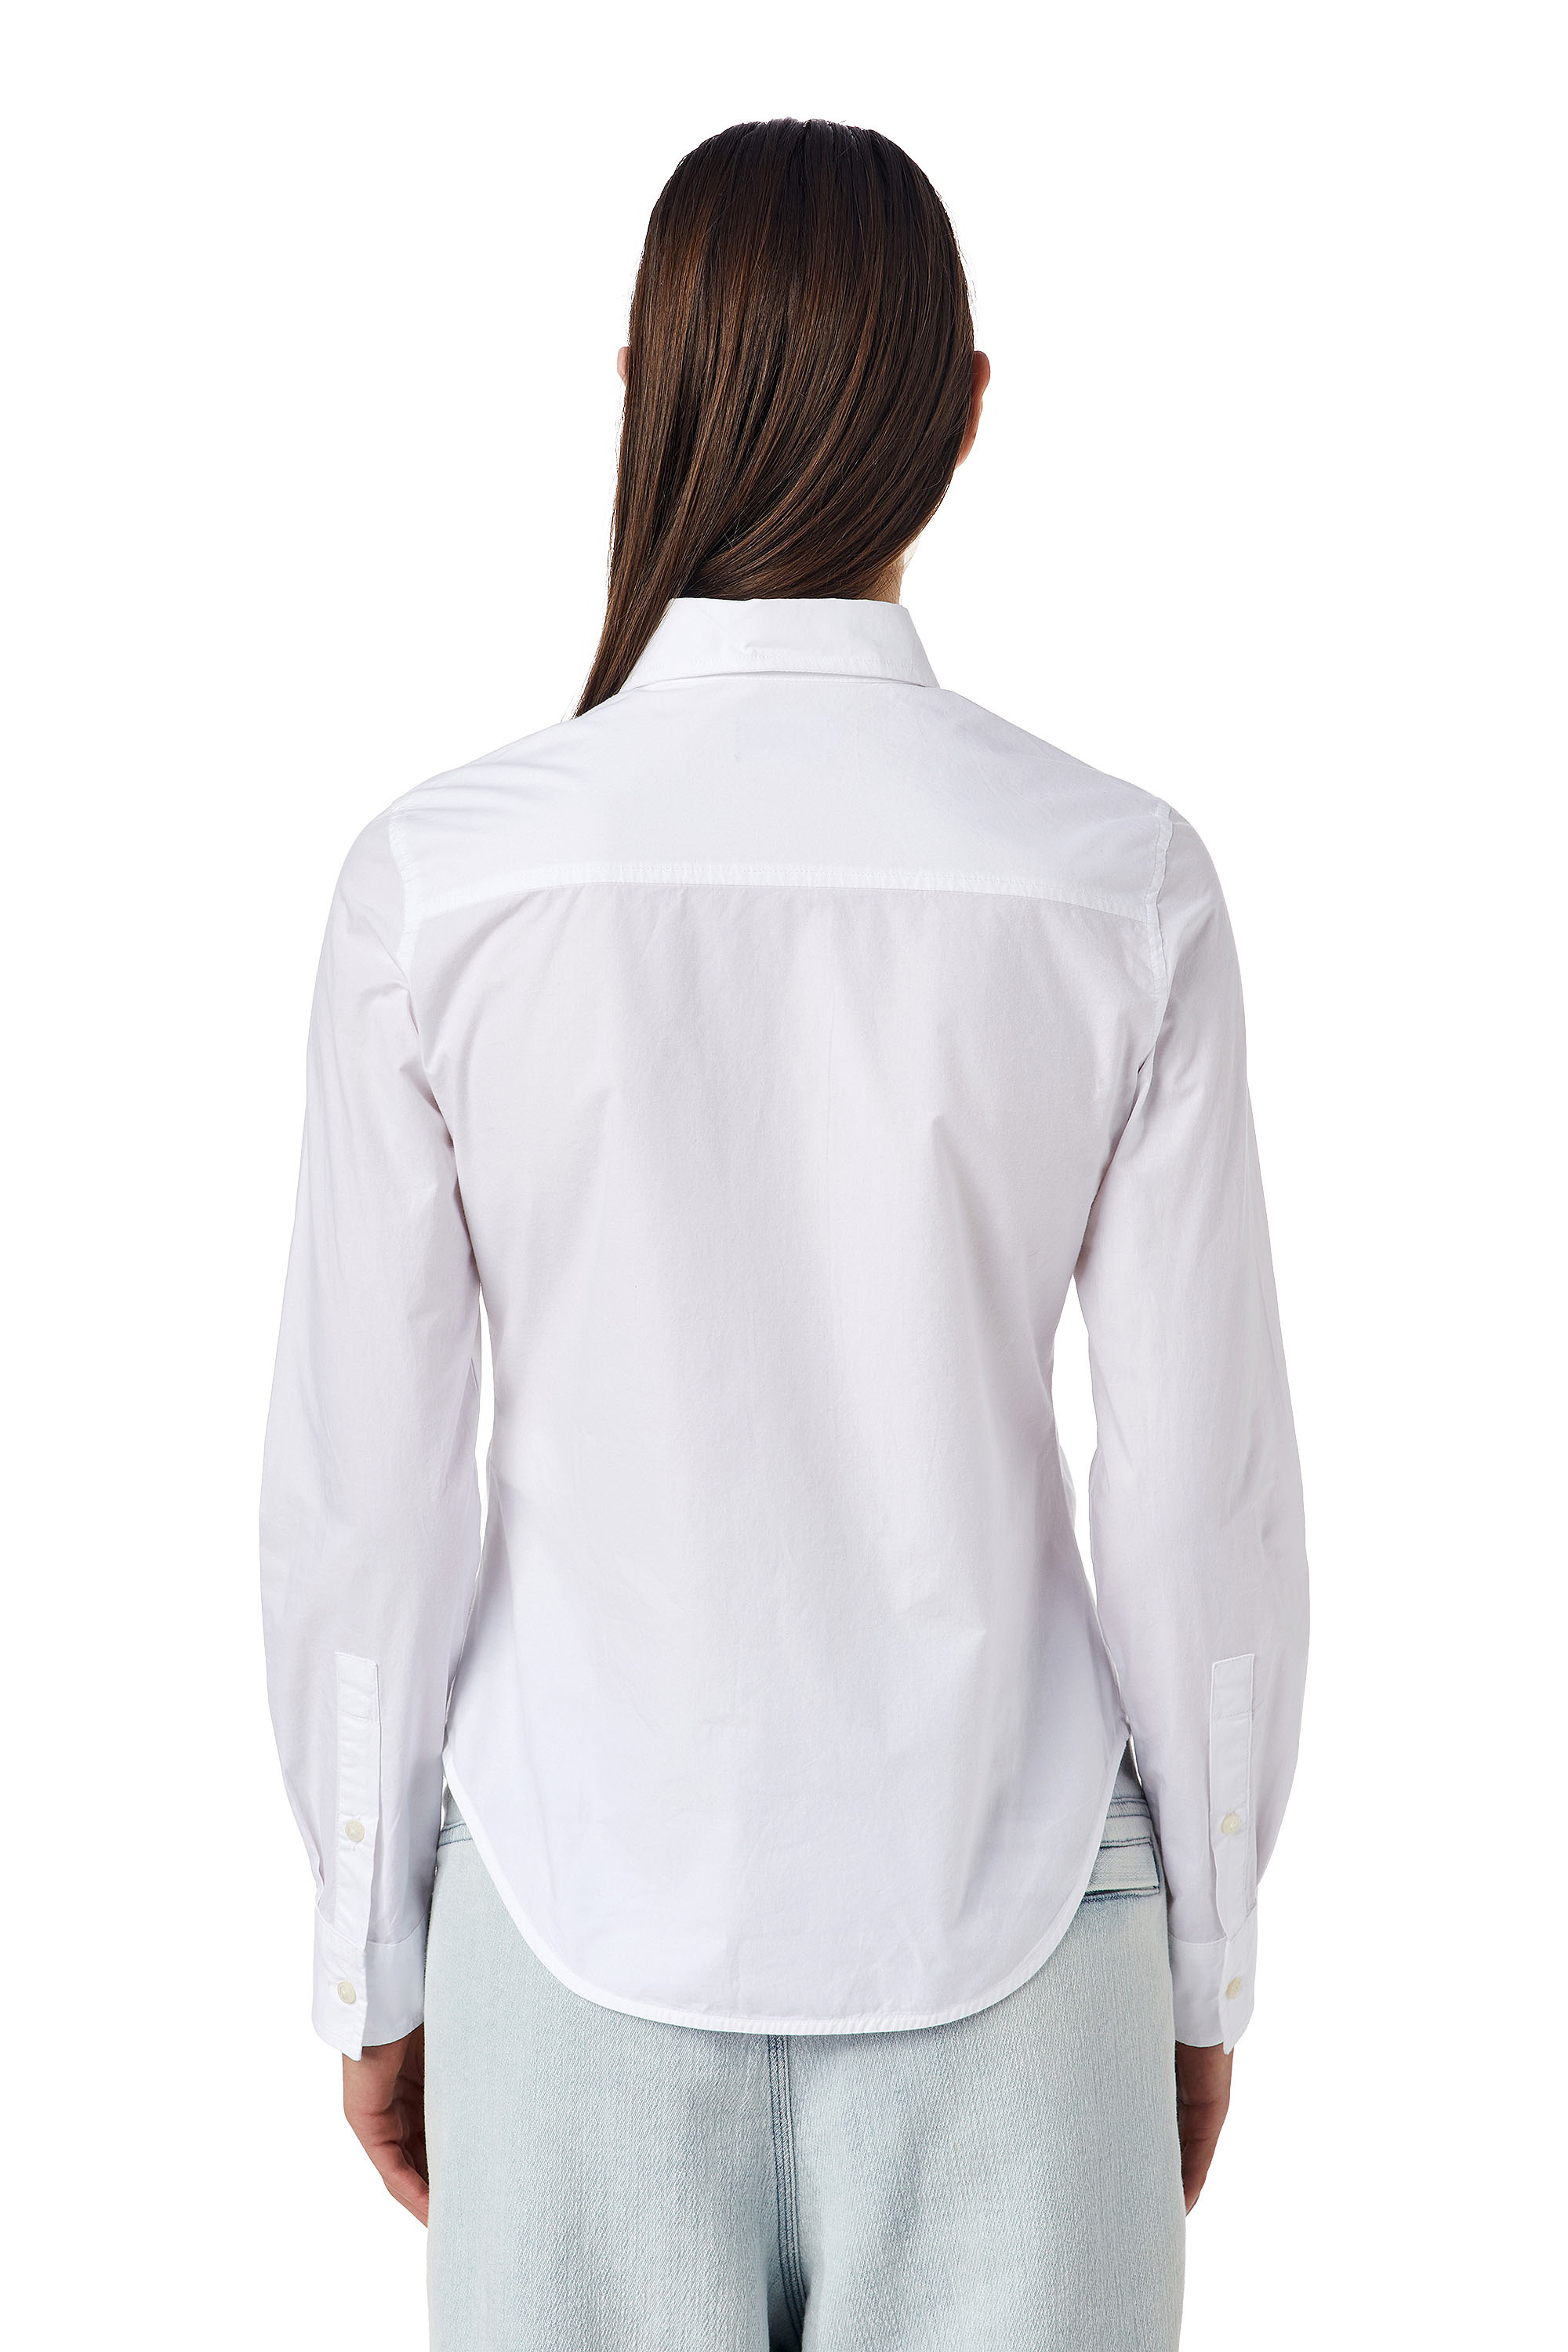 DAMEN Hemden & T-Shirts Bluse Basisch Diesel Bluse Grau XS Rabatt 71 % 